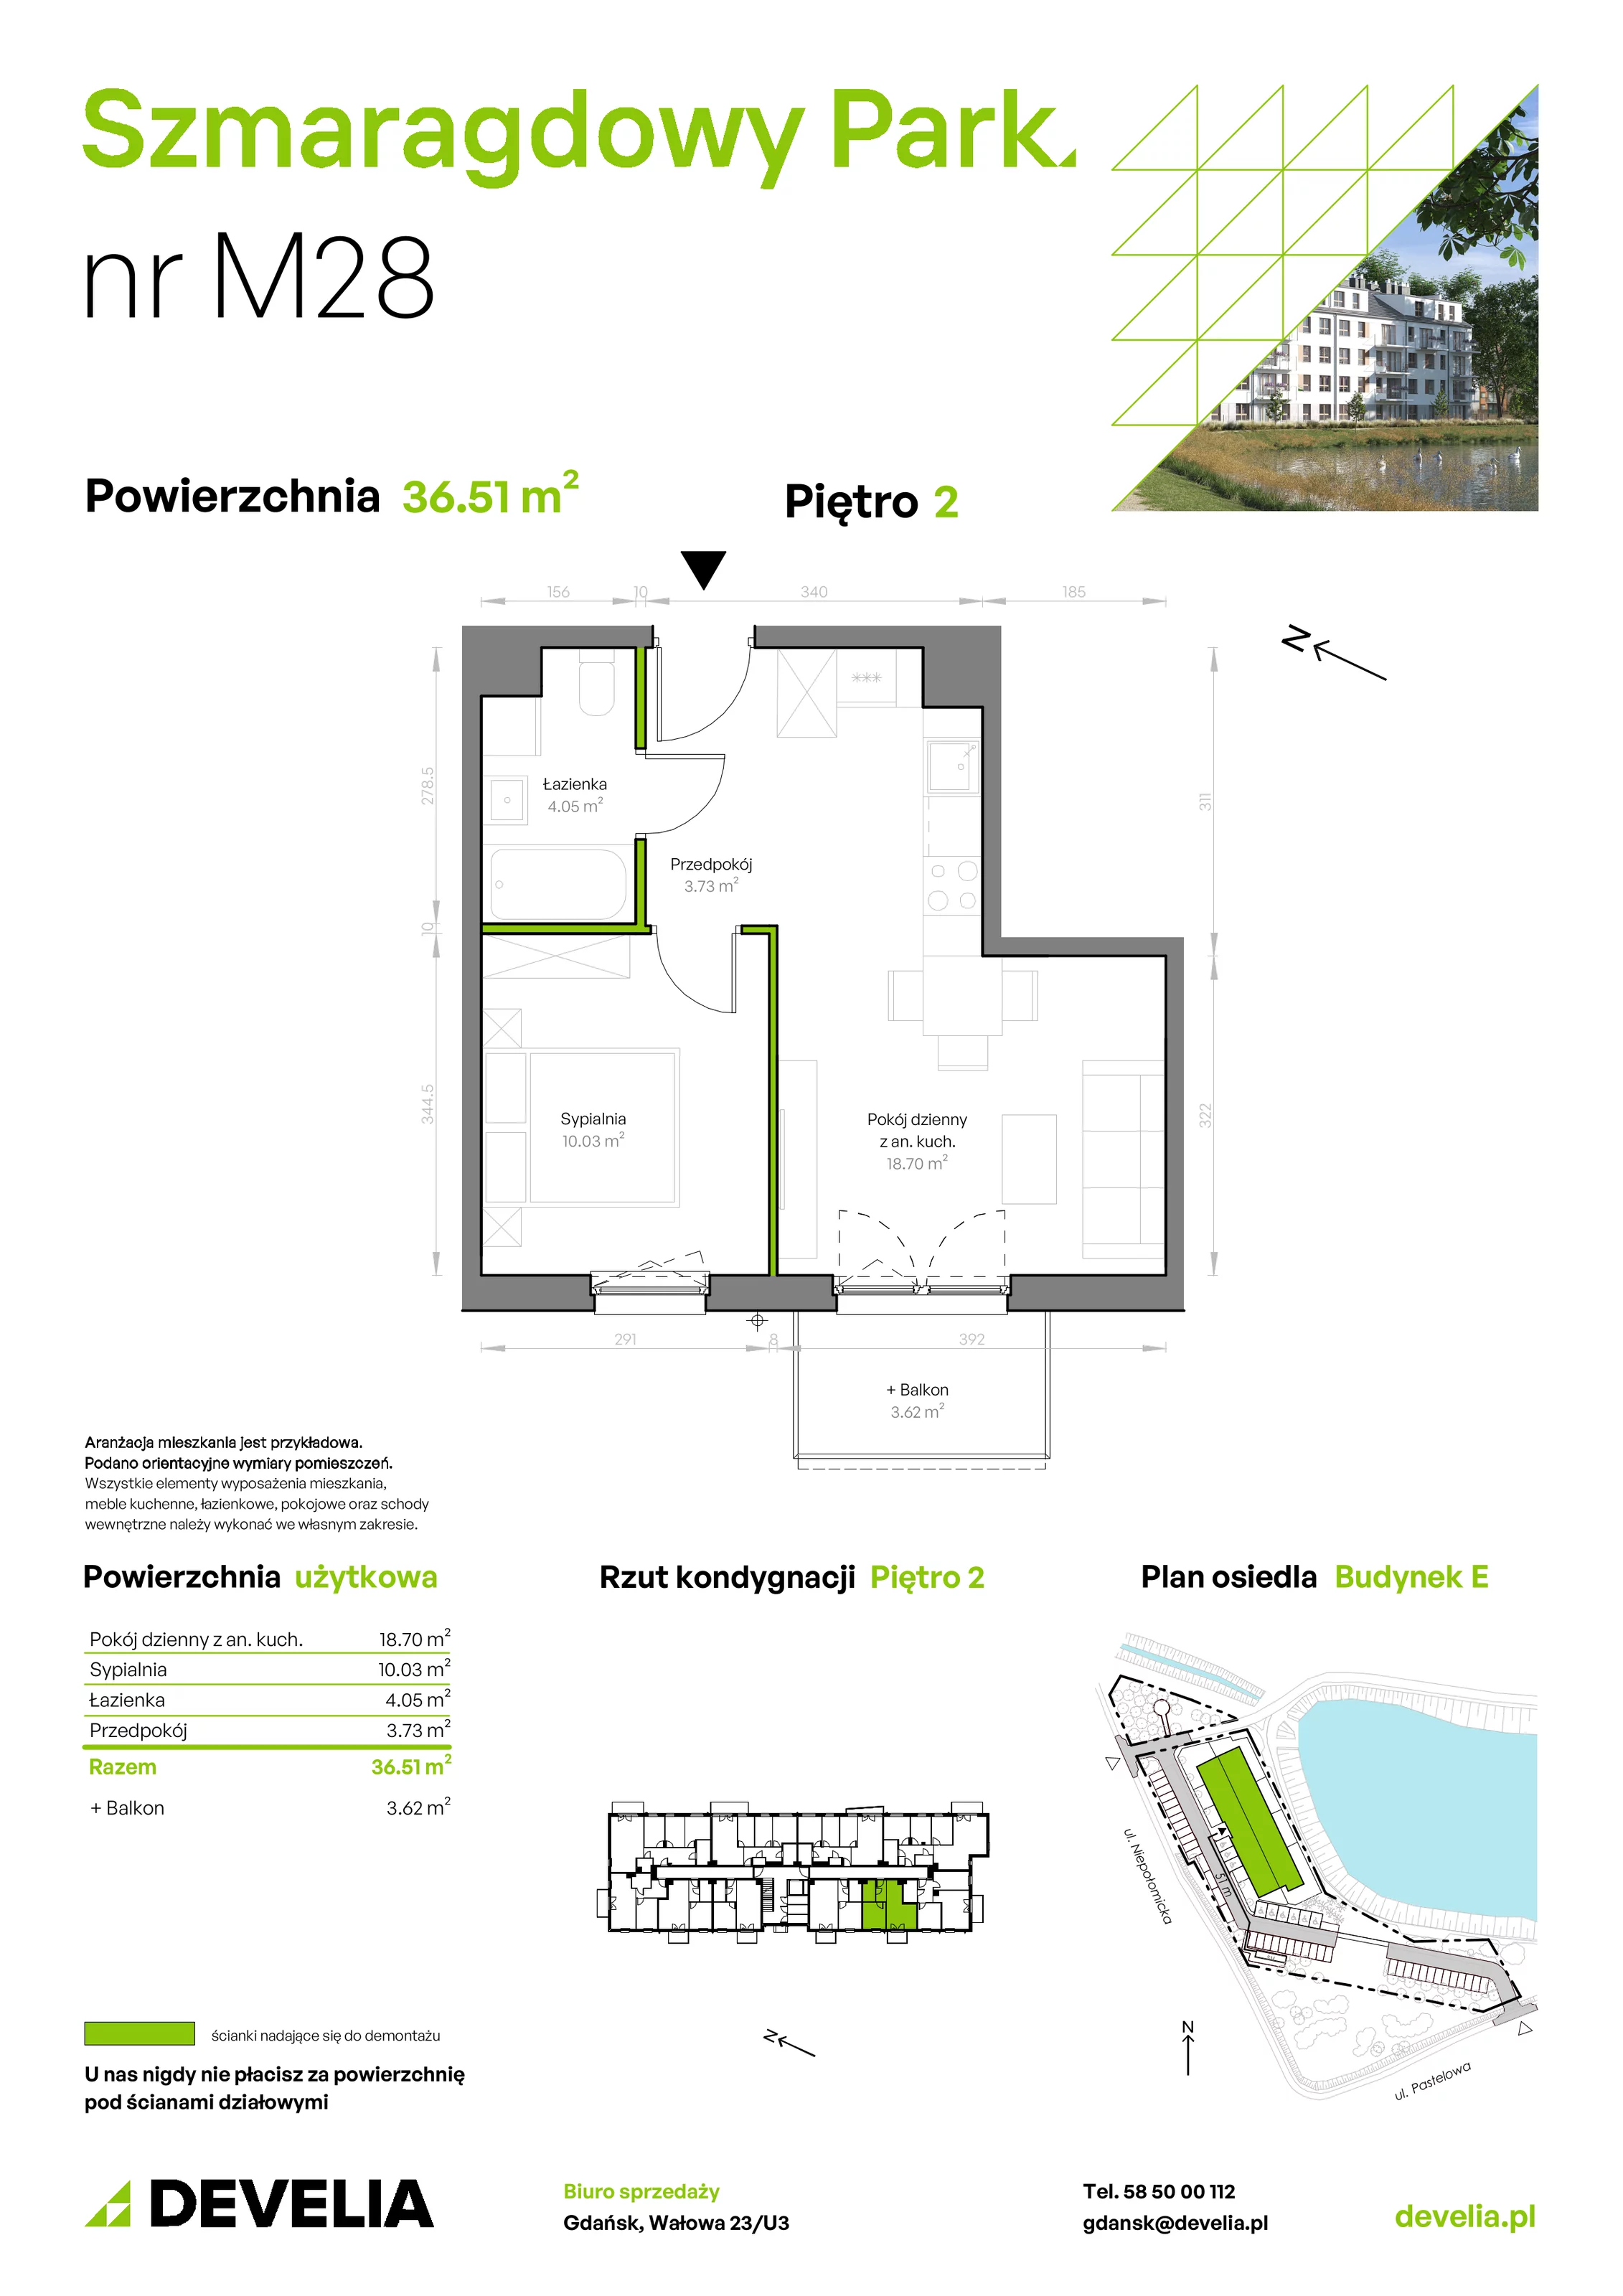 Mieszkanie 36,51 m², piętro 2, oferta nr E/028, Szmaragdowy Park, Gdańsk, Orunia Górna-Gdańsk Południe, Łostowice, ul. Topazowa 2